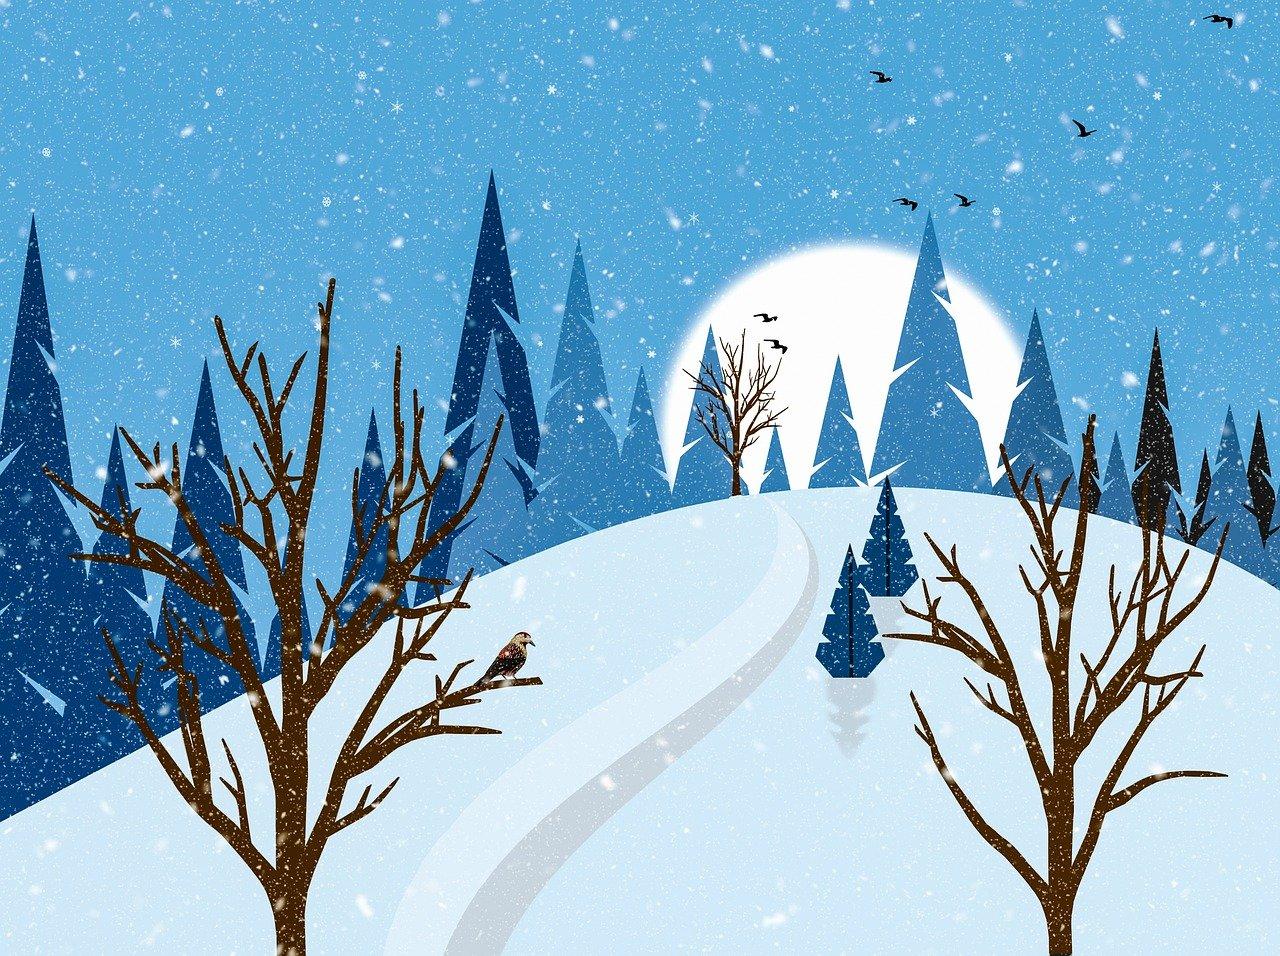 Hd Обои Зима Снег - Бесплатное изображение на Pixabay - Pixabay